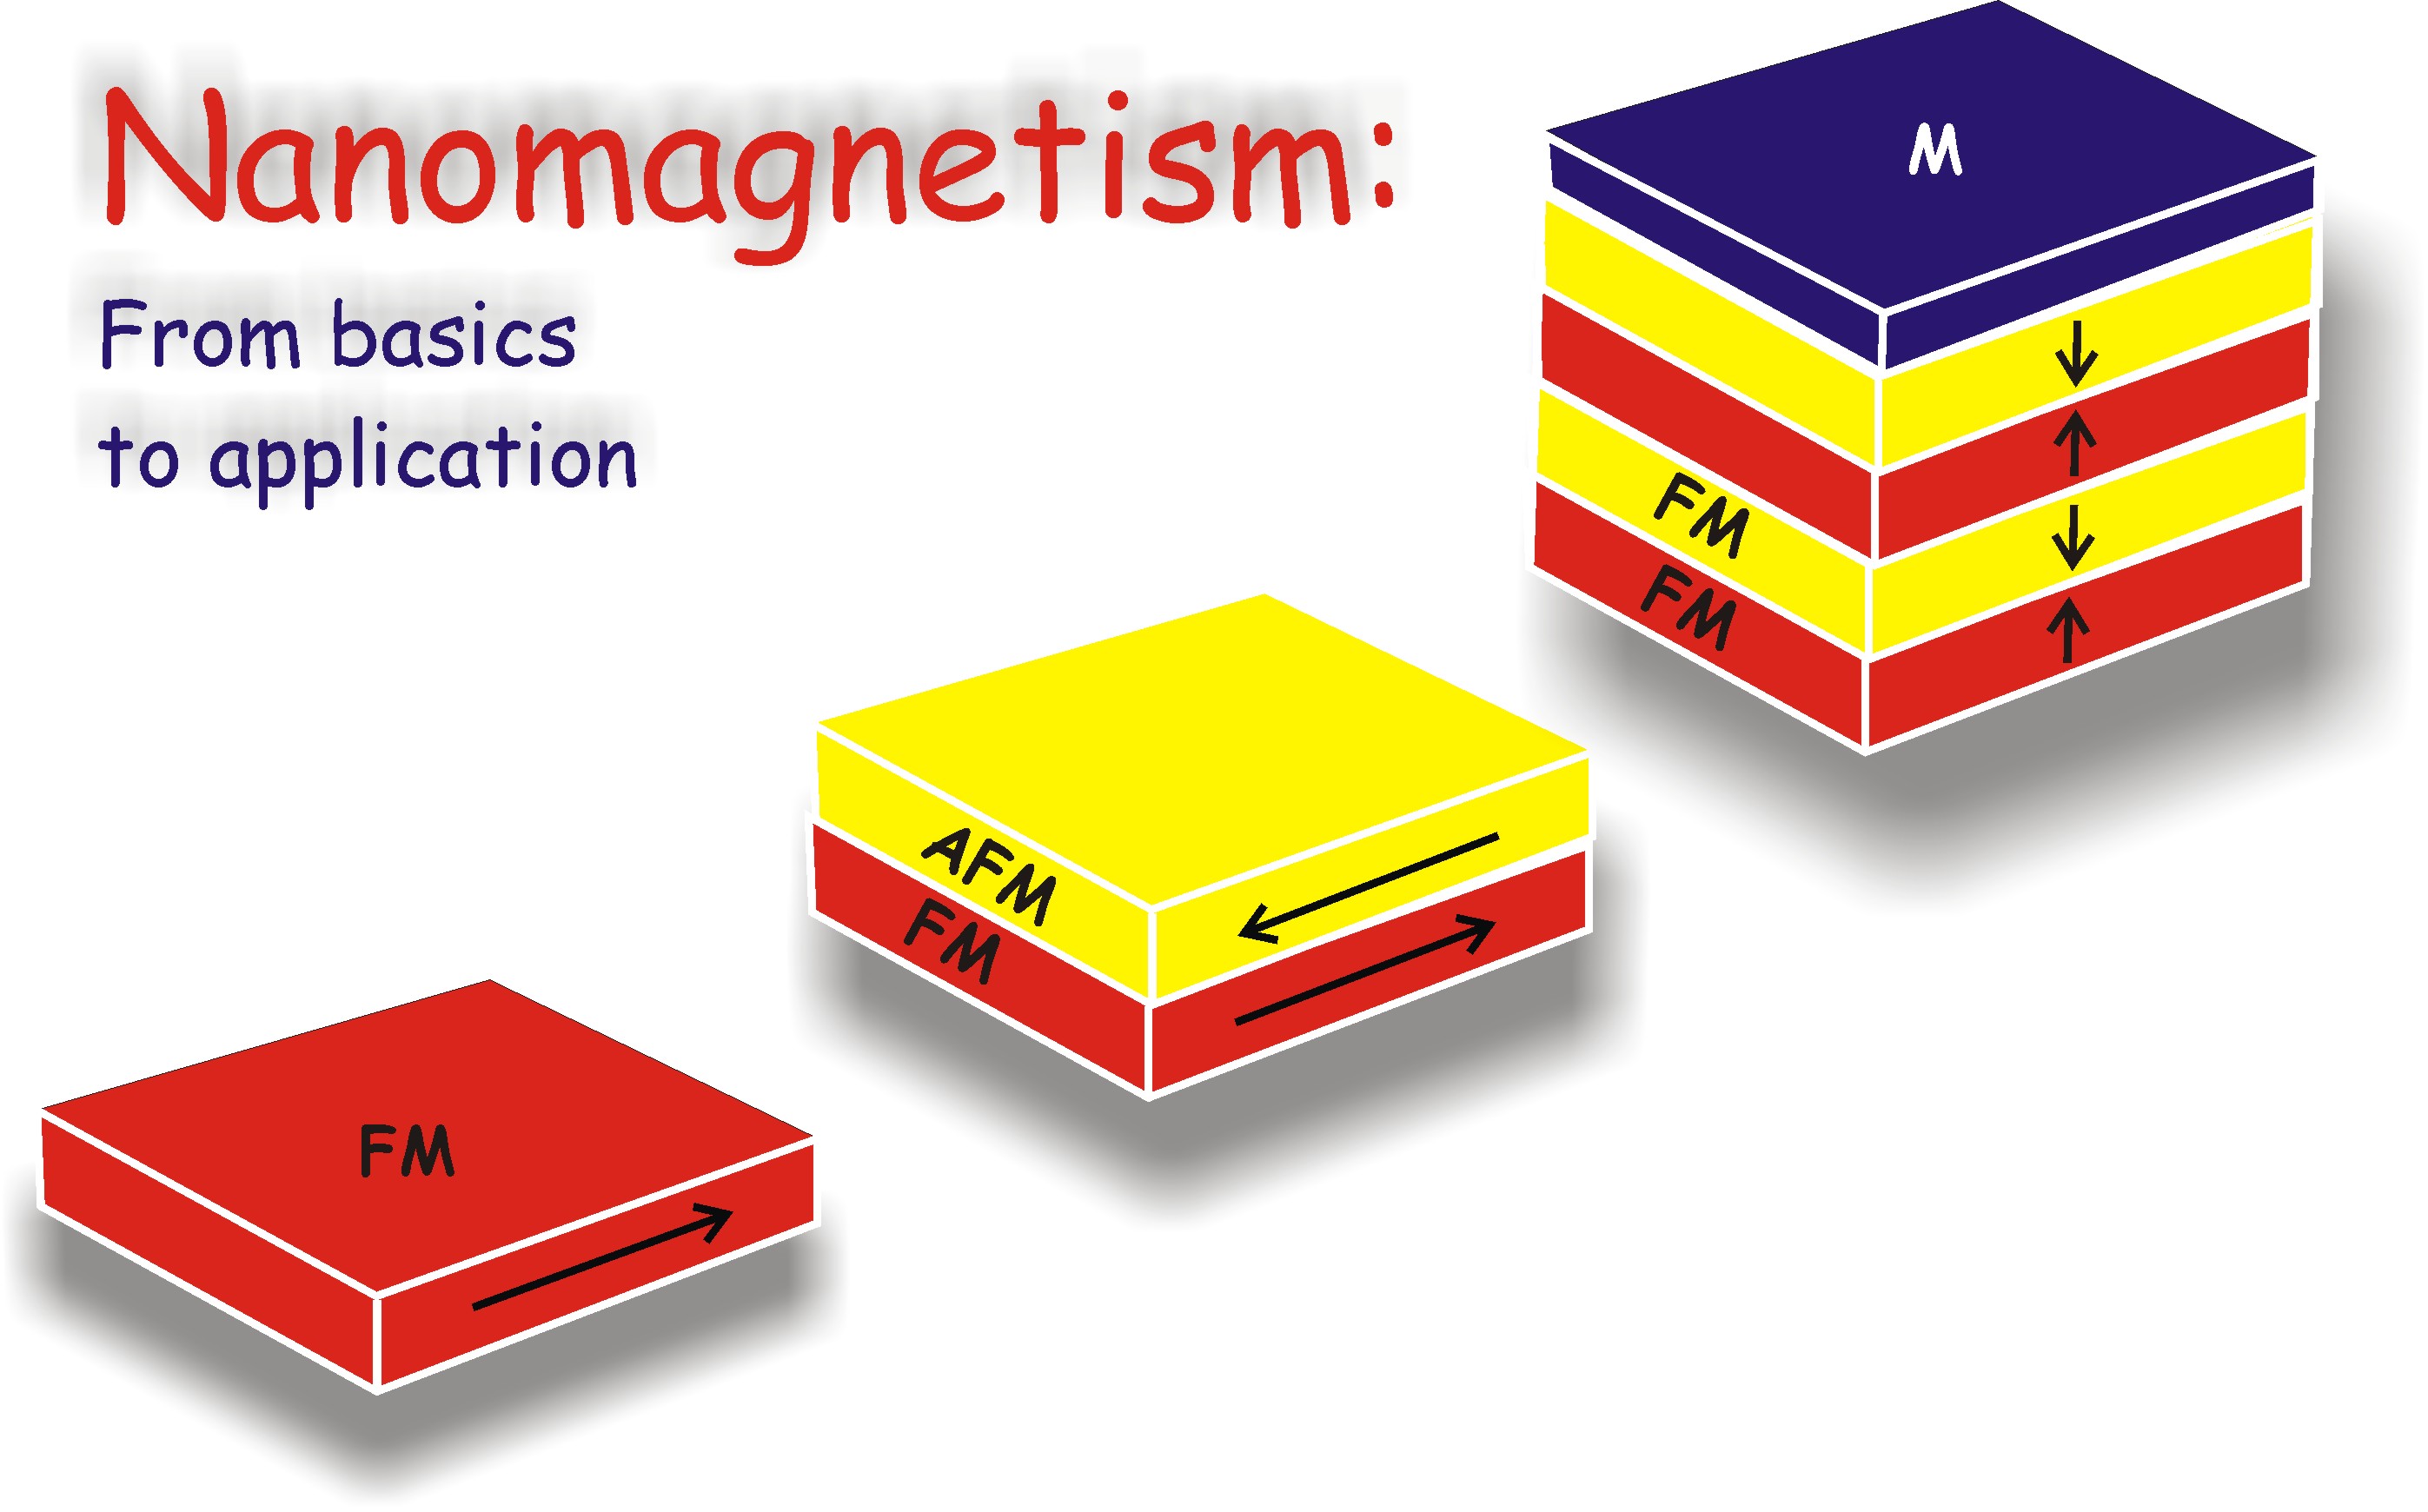 nanomagnetism